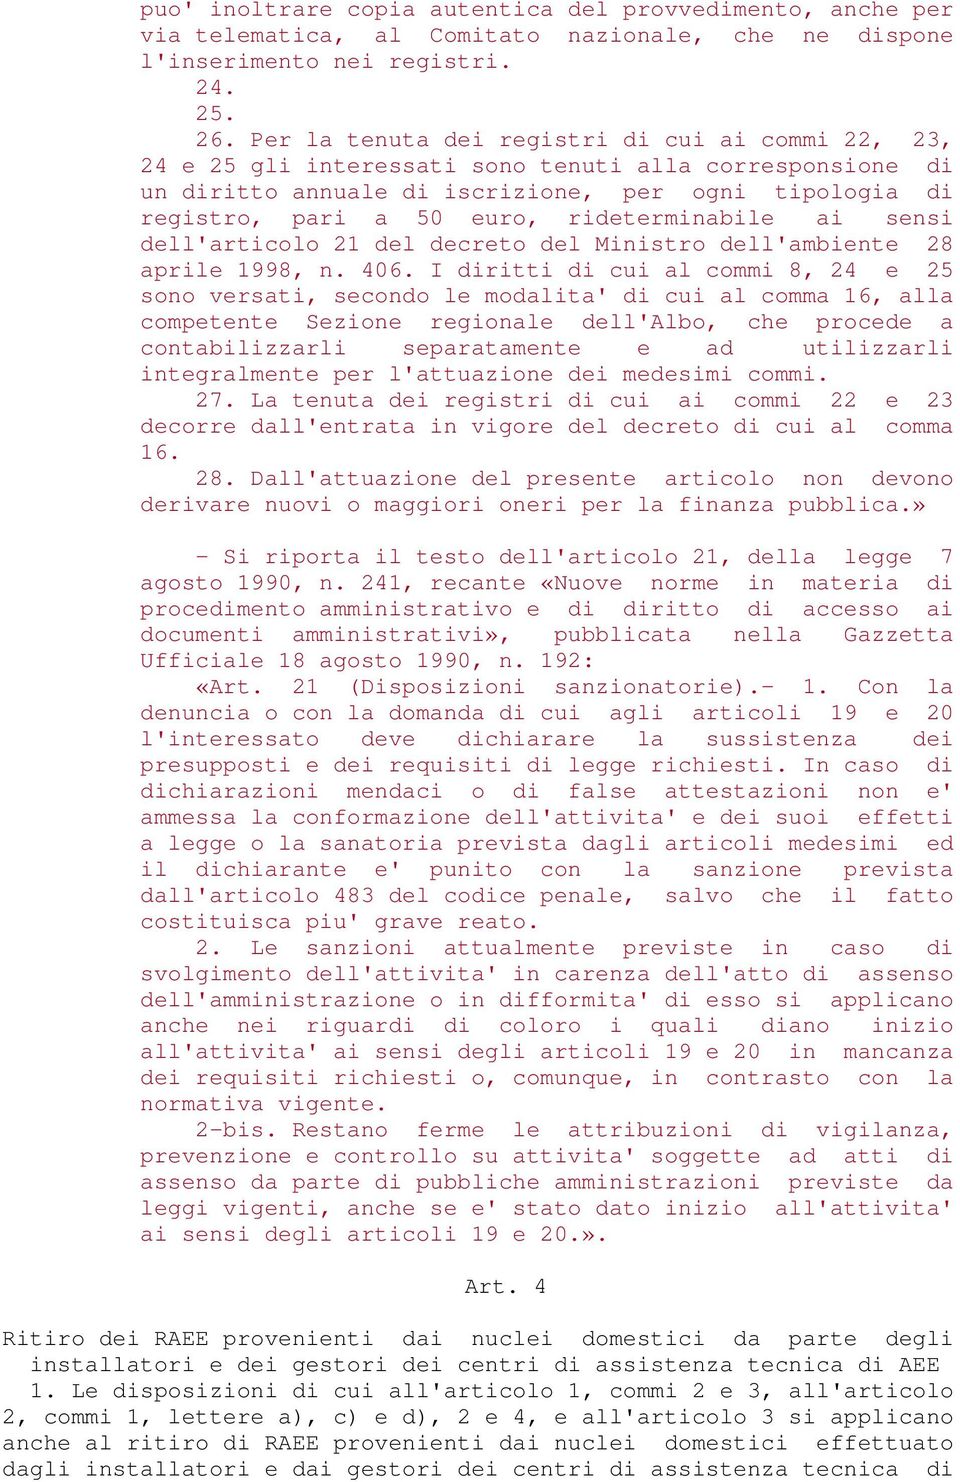 rideterminabile ai sensi dell'articolo 21 del decreto del Ministro dell'ambiente 28 aprile 1998, n. 406.